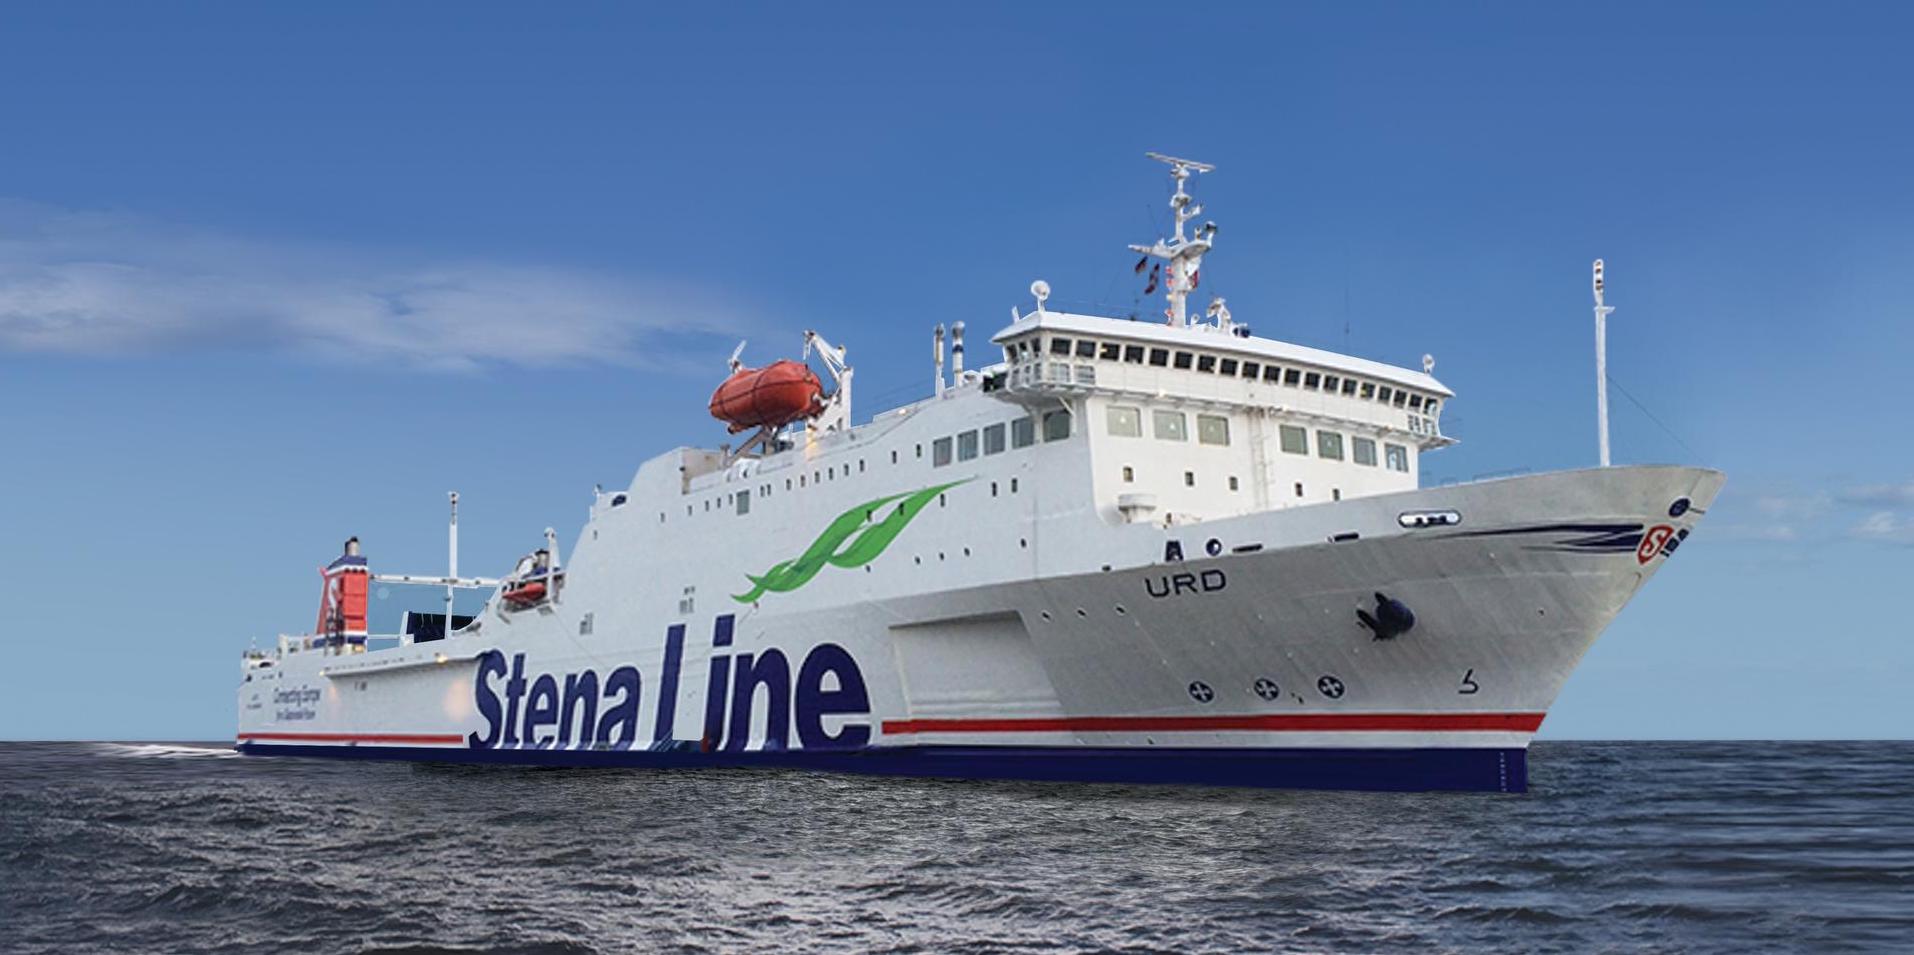 Foto von Stena Line - Urd Schiff